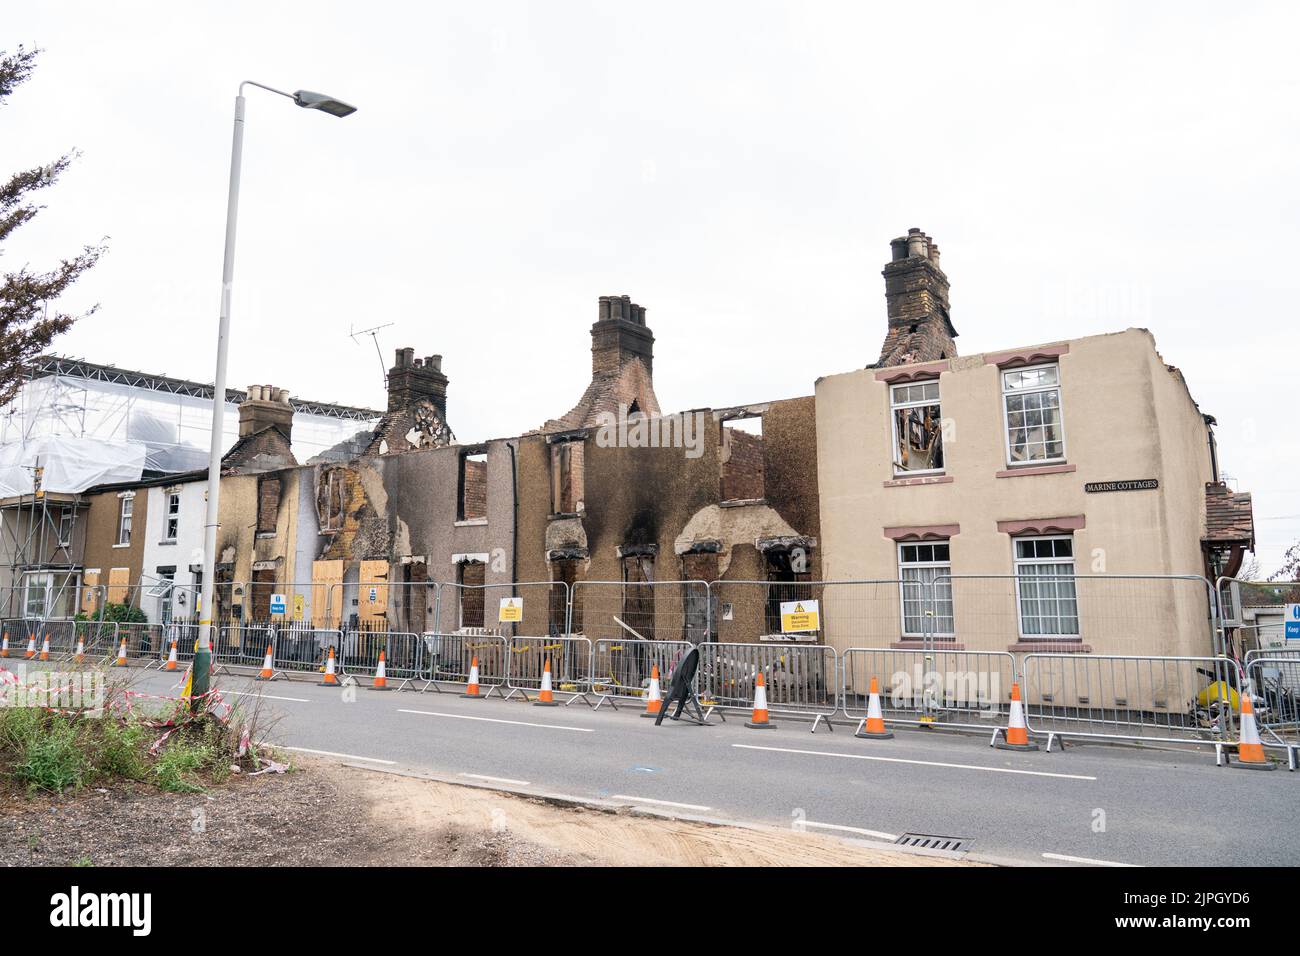 Il fuoco ha danneggiato le case nel villaggio di Wennington, in Havering, Londra orientale dopo un blaze il 19th luglio dovuto il tempo caldo. Data immagine: Giovedì 18 agosto 2022. Foto Stock